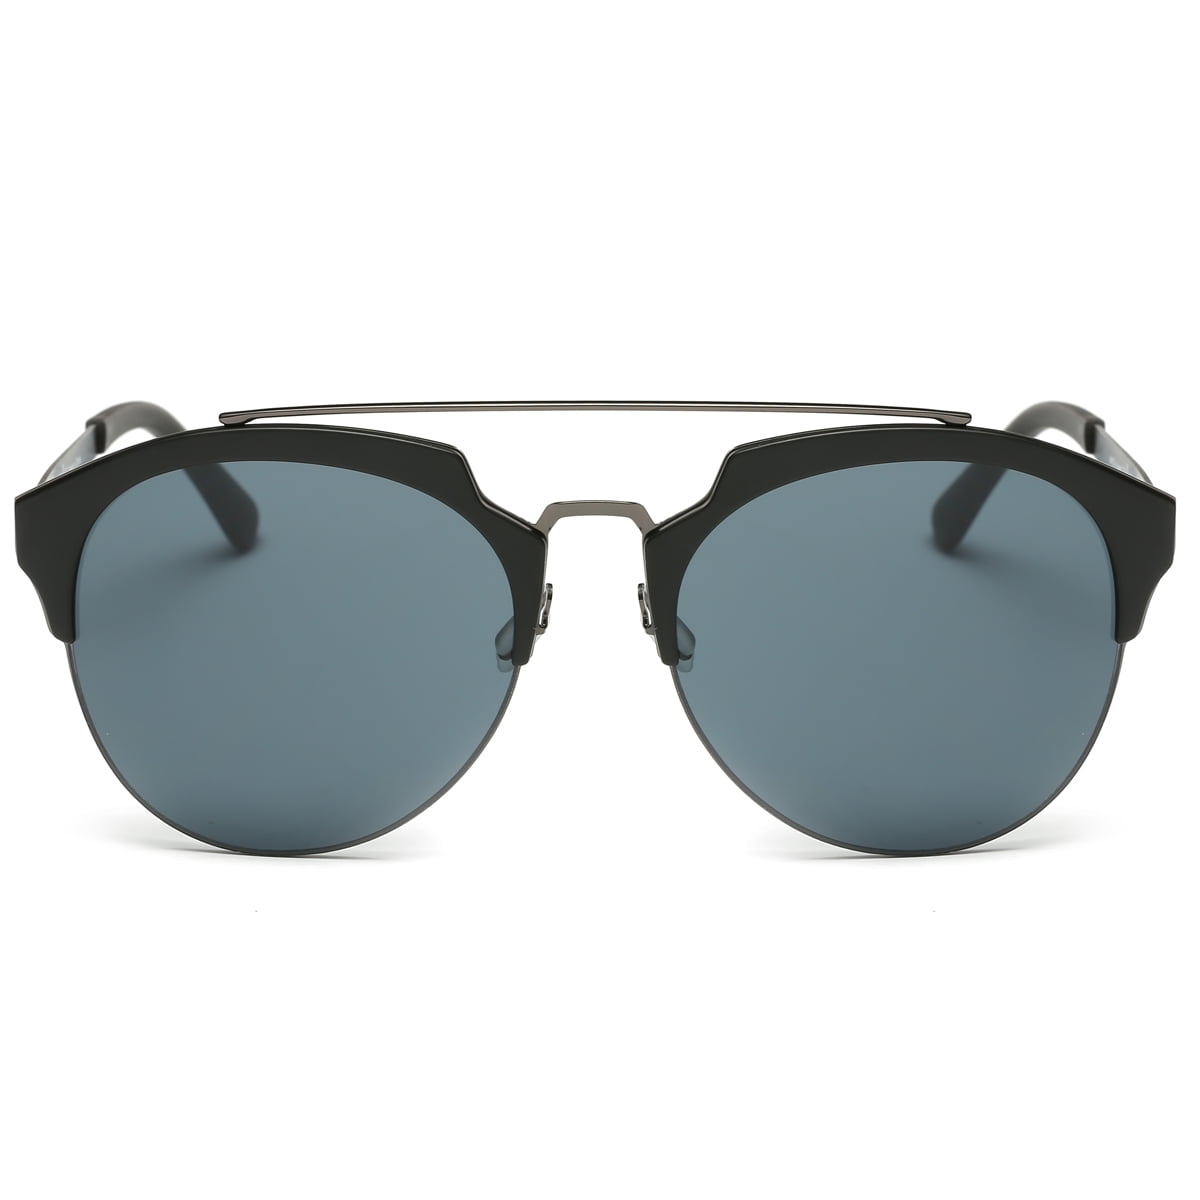 Dasein Semi Rimless Polarized Sunglasses Women Men Retro Sunglasses - image 1 of 4